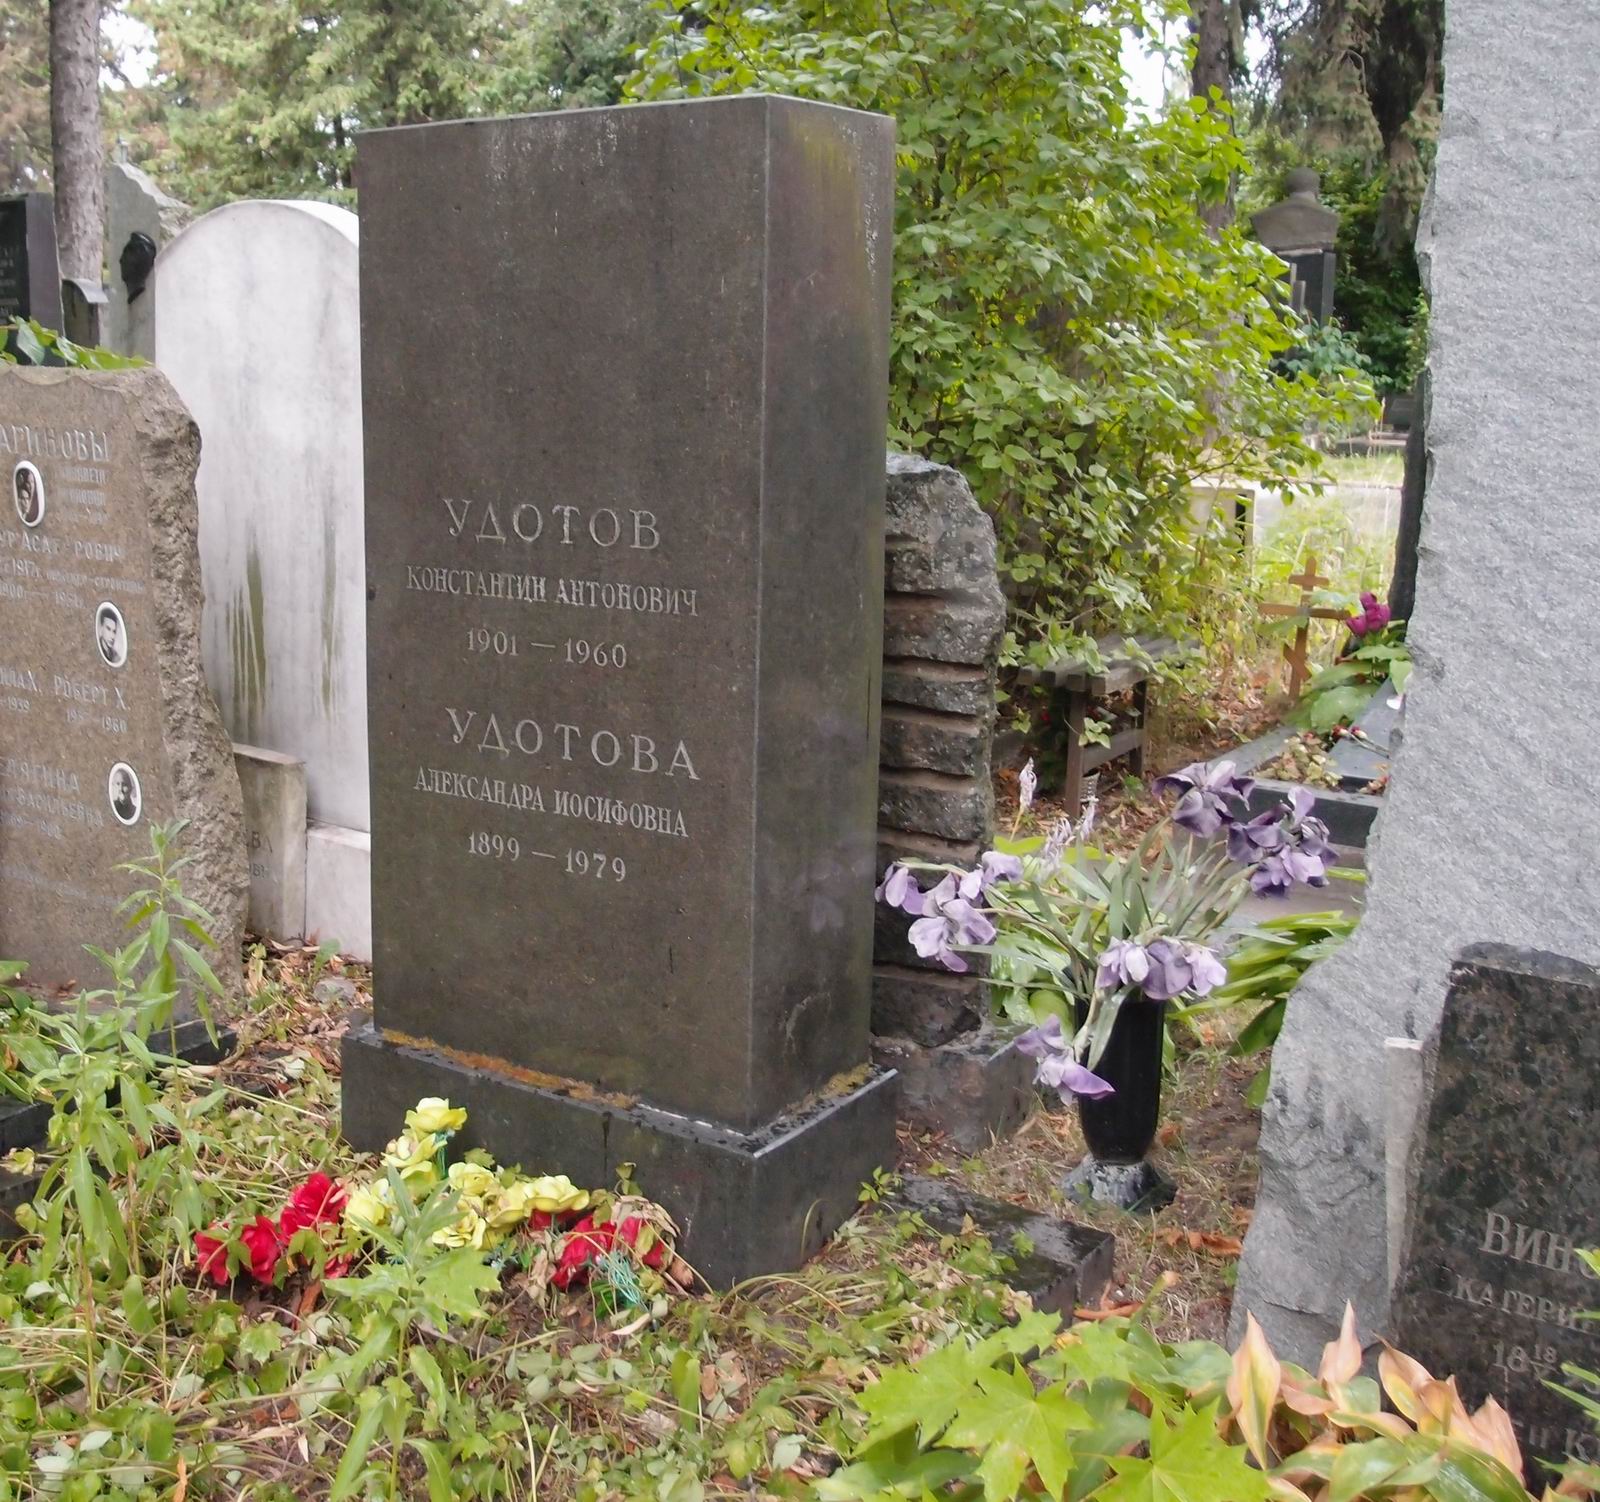 Памятник на могиле Удотова К.А. (1901-1960), на Новодевичьем кладбище (5-41-4).